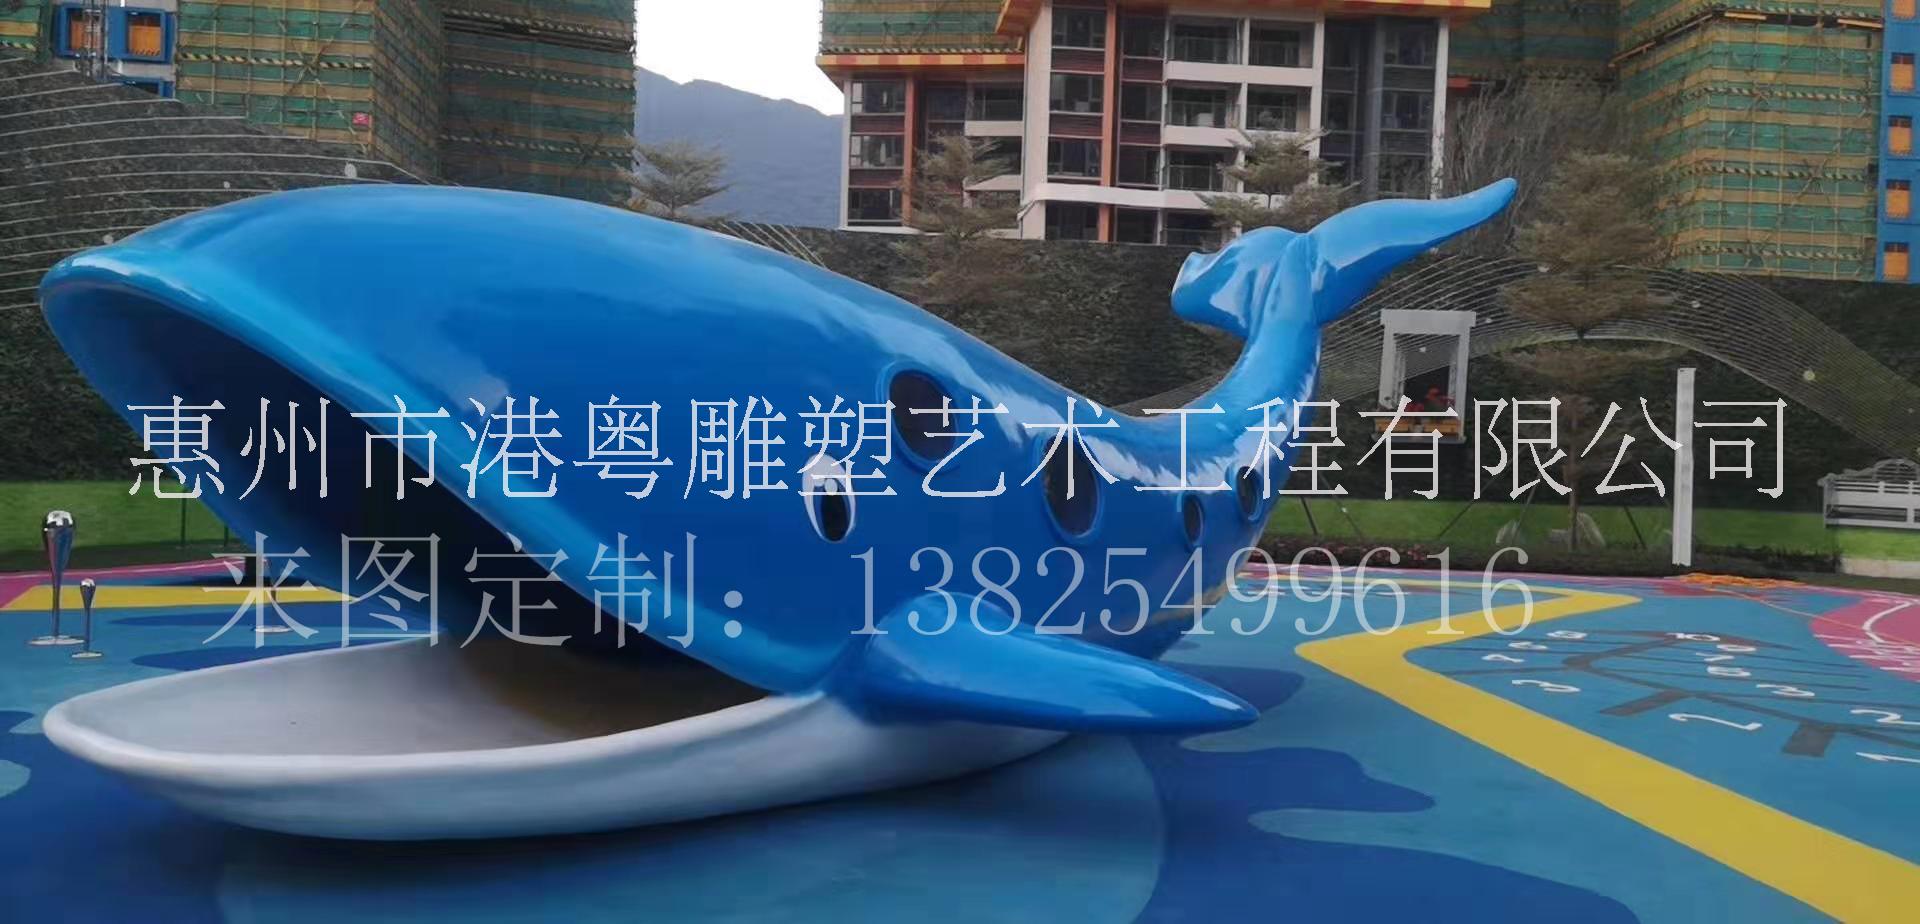 广州海洋生物主题乐园玻璃钢海洋生物鲨鱼海豚雕塑摆件图片